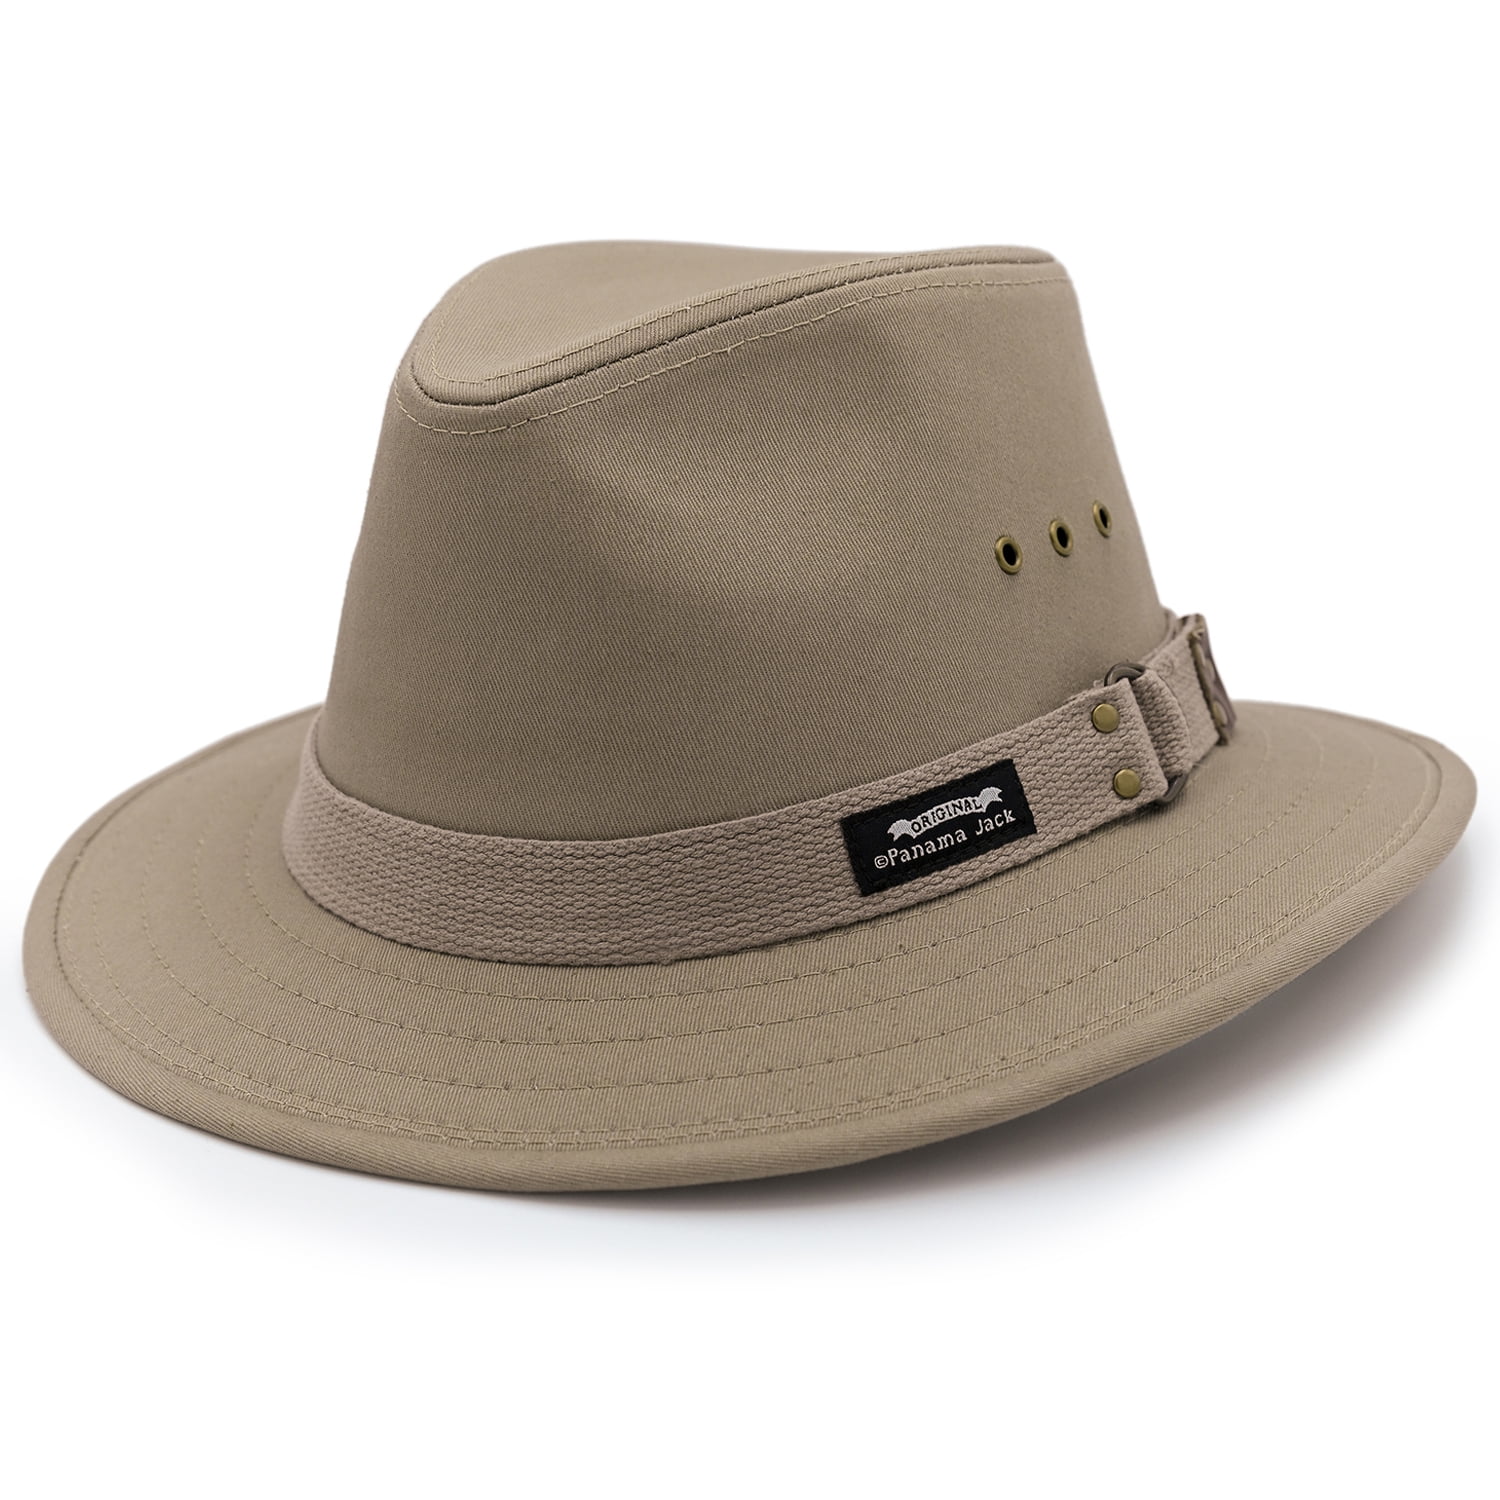 One Size eBuyGB Unisex Adult Summer Panama Hat